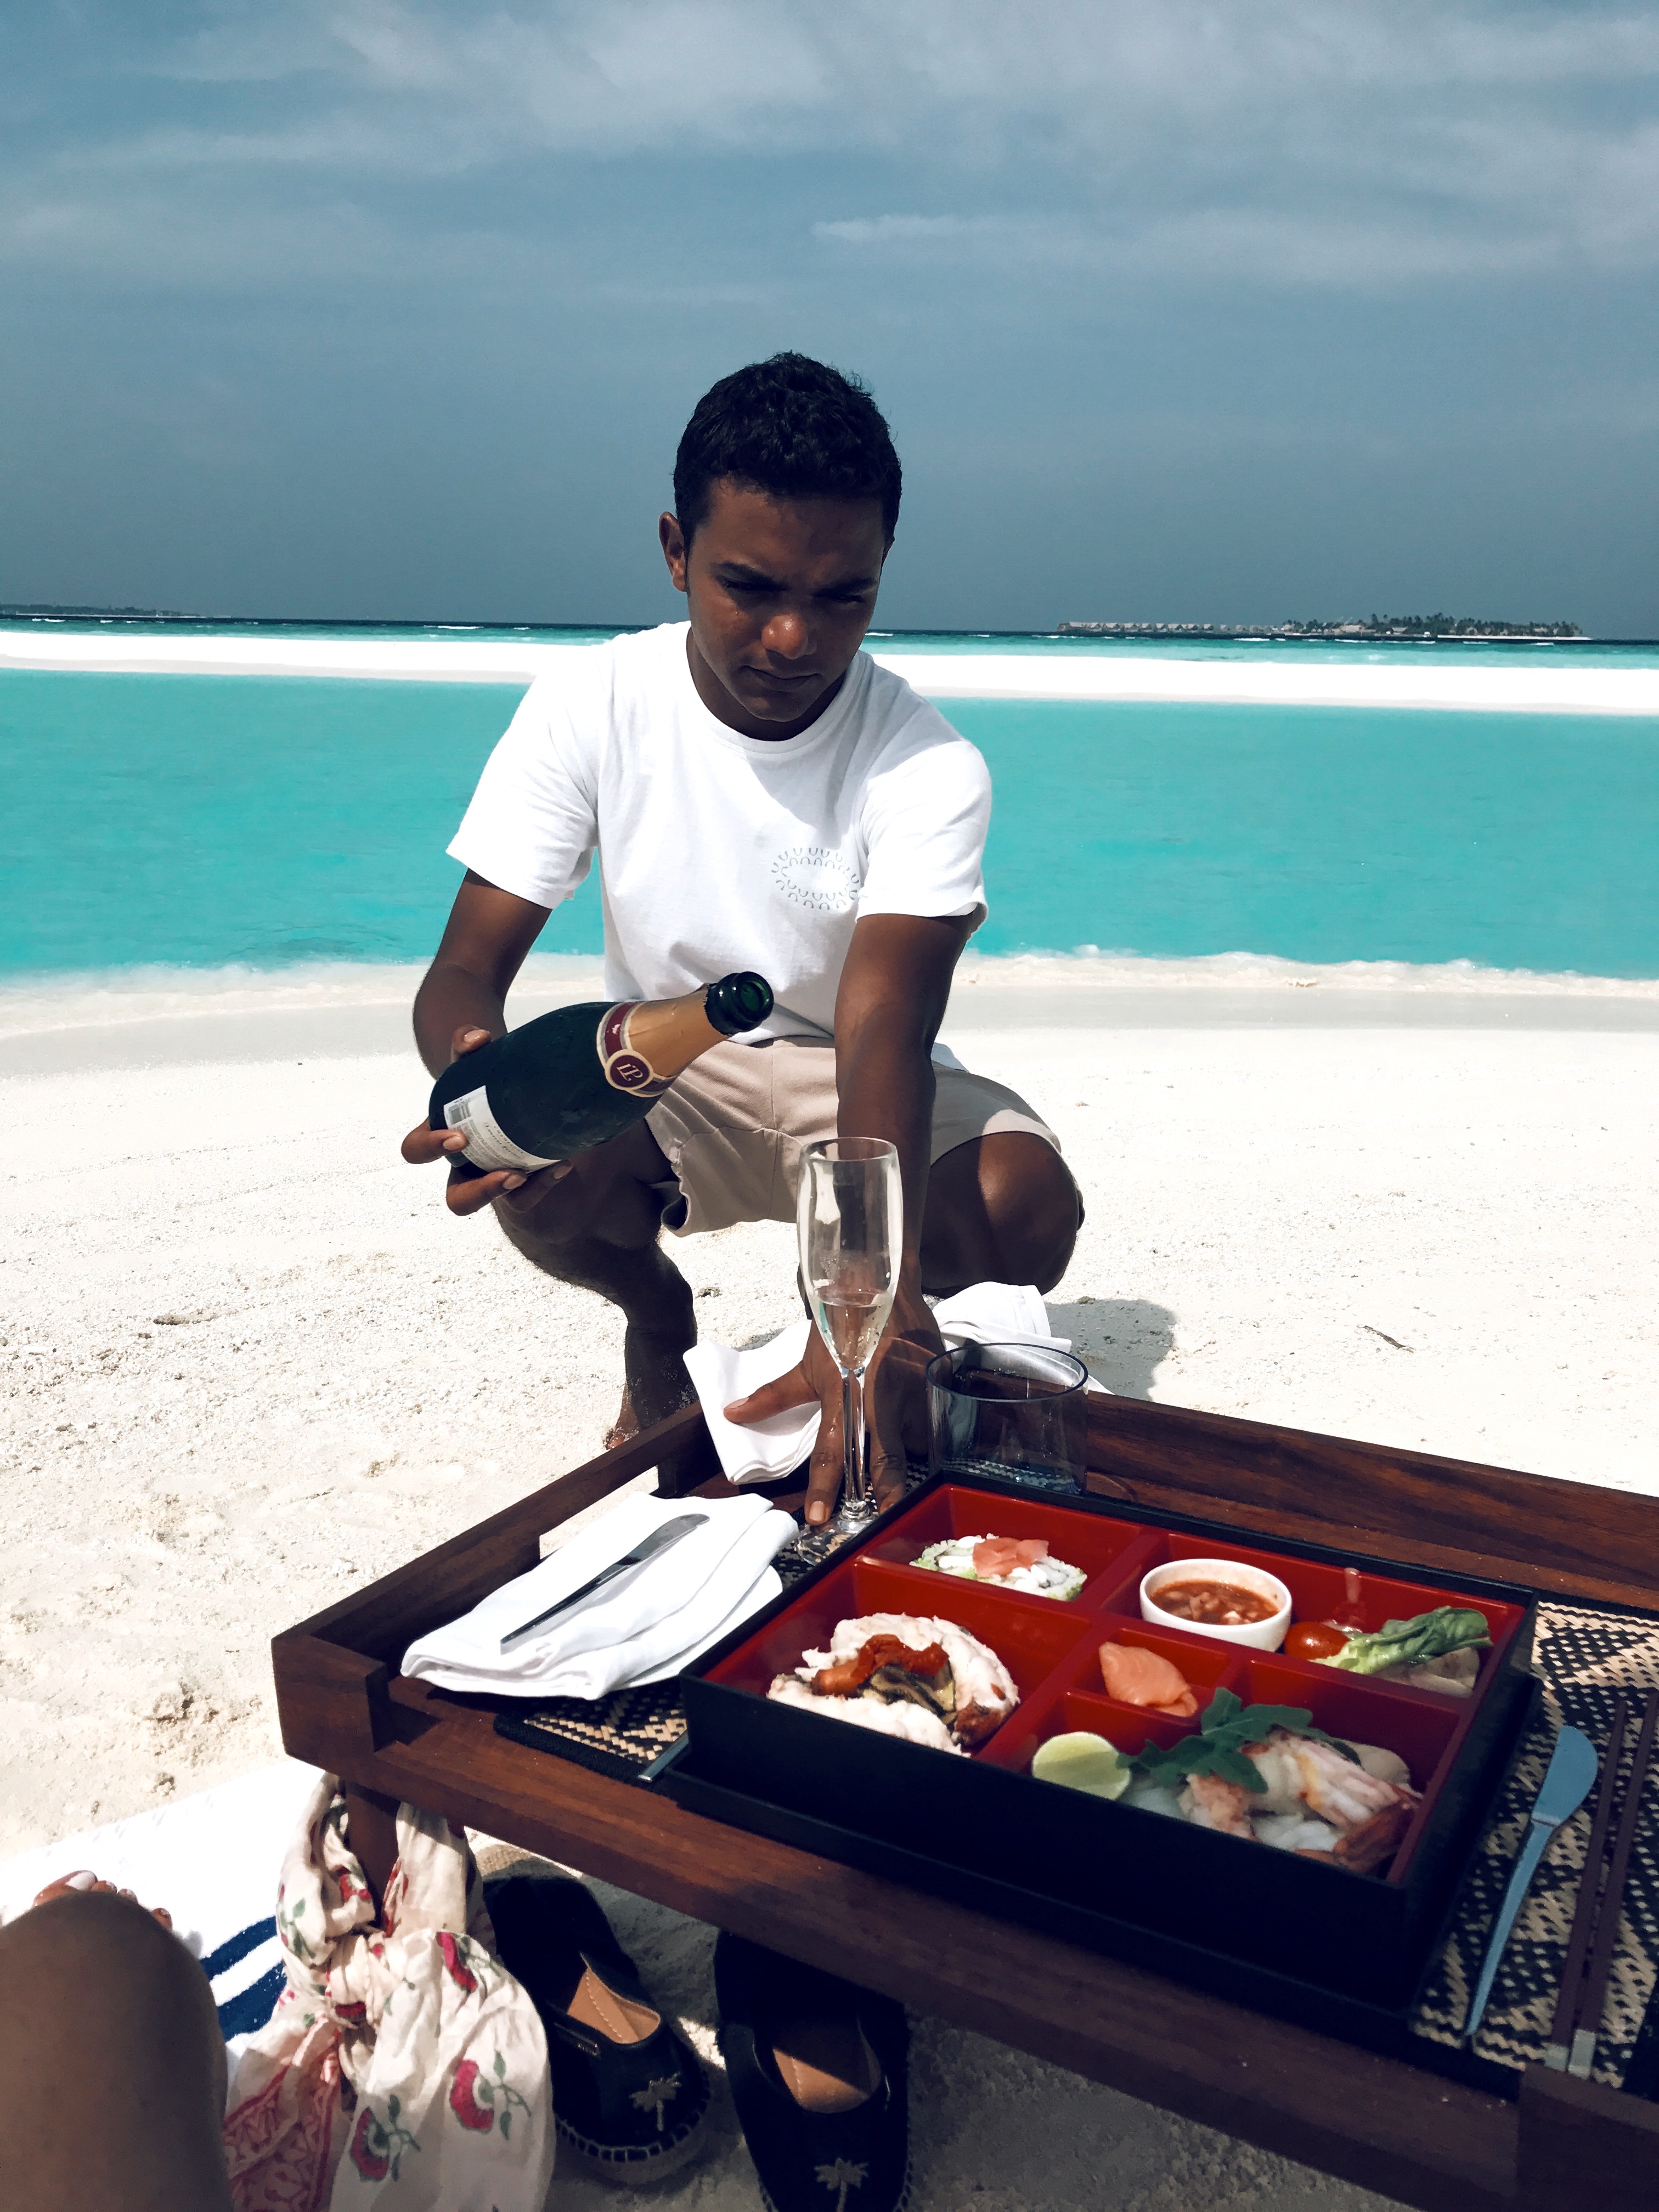 milaidhoo-luxury-travel-maldives-with-kuoni